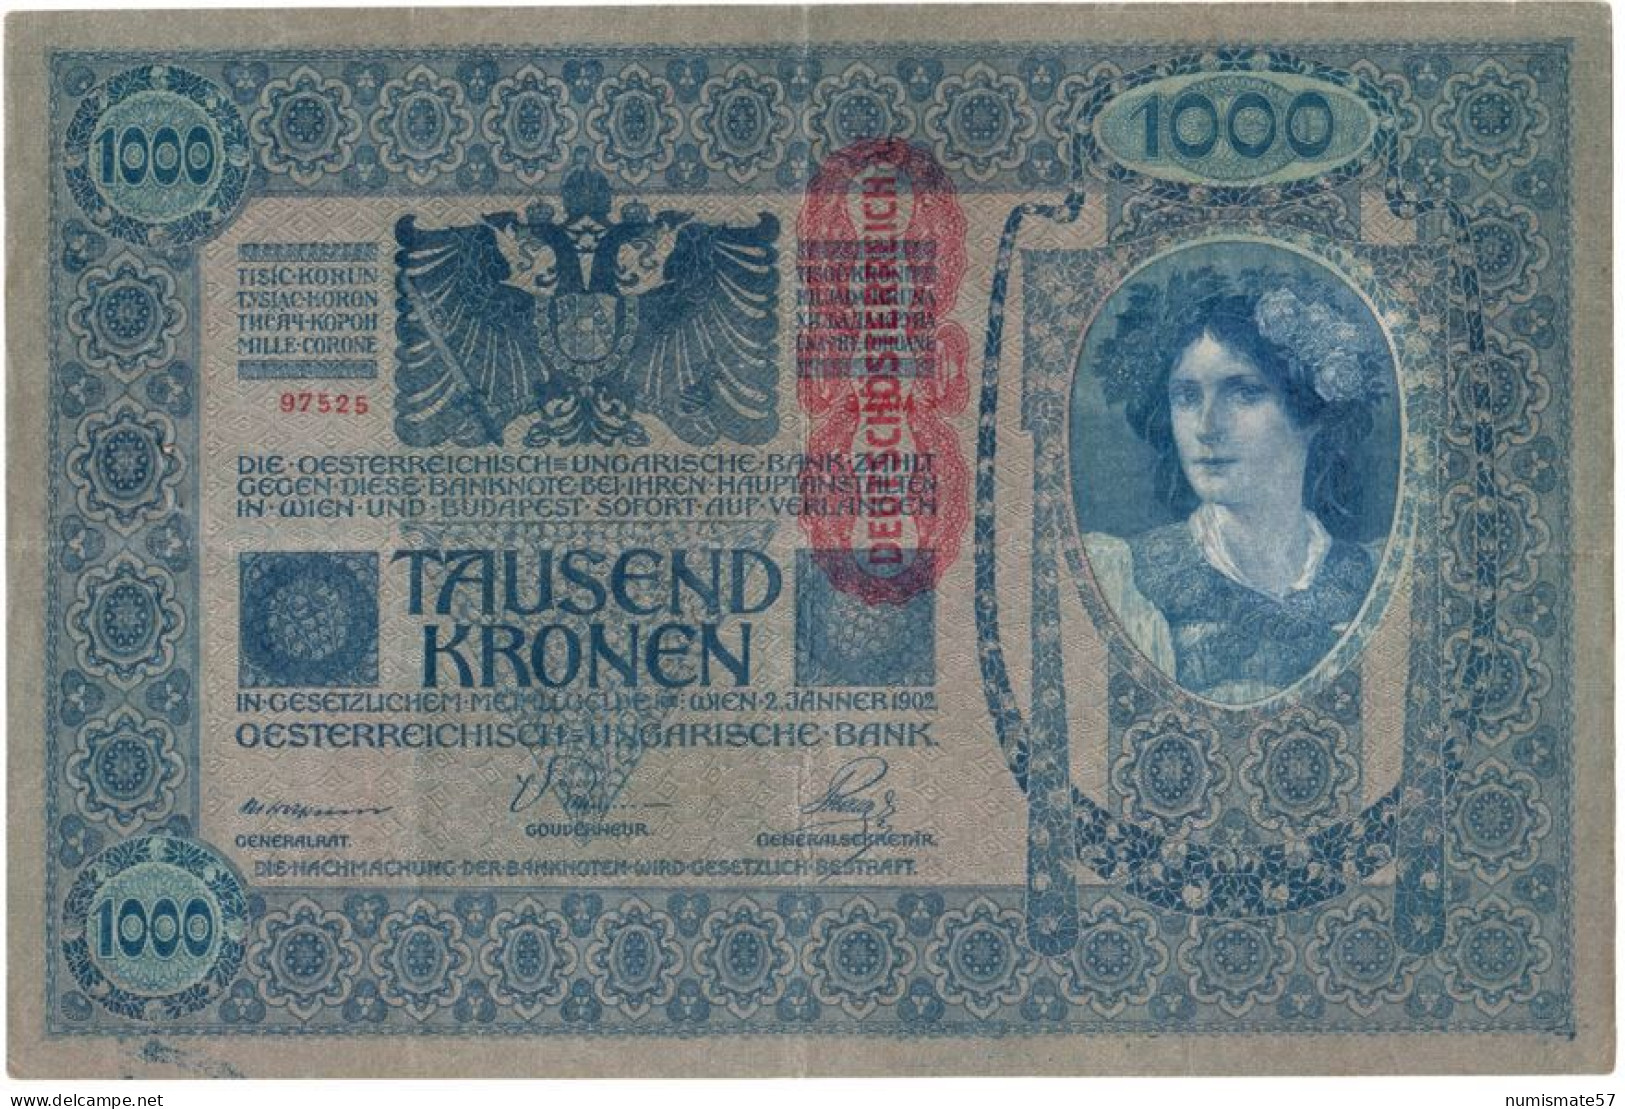 AUTRICHE - AUSTRIA - BILLET 1000 KRONEN 1902 Avec Surcharge Rouge "Deustschosterreich" - ( KK# 141 - P# 59 ) - Oesterreich